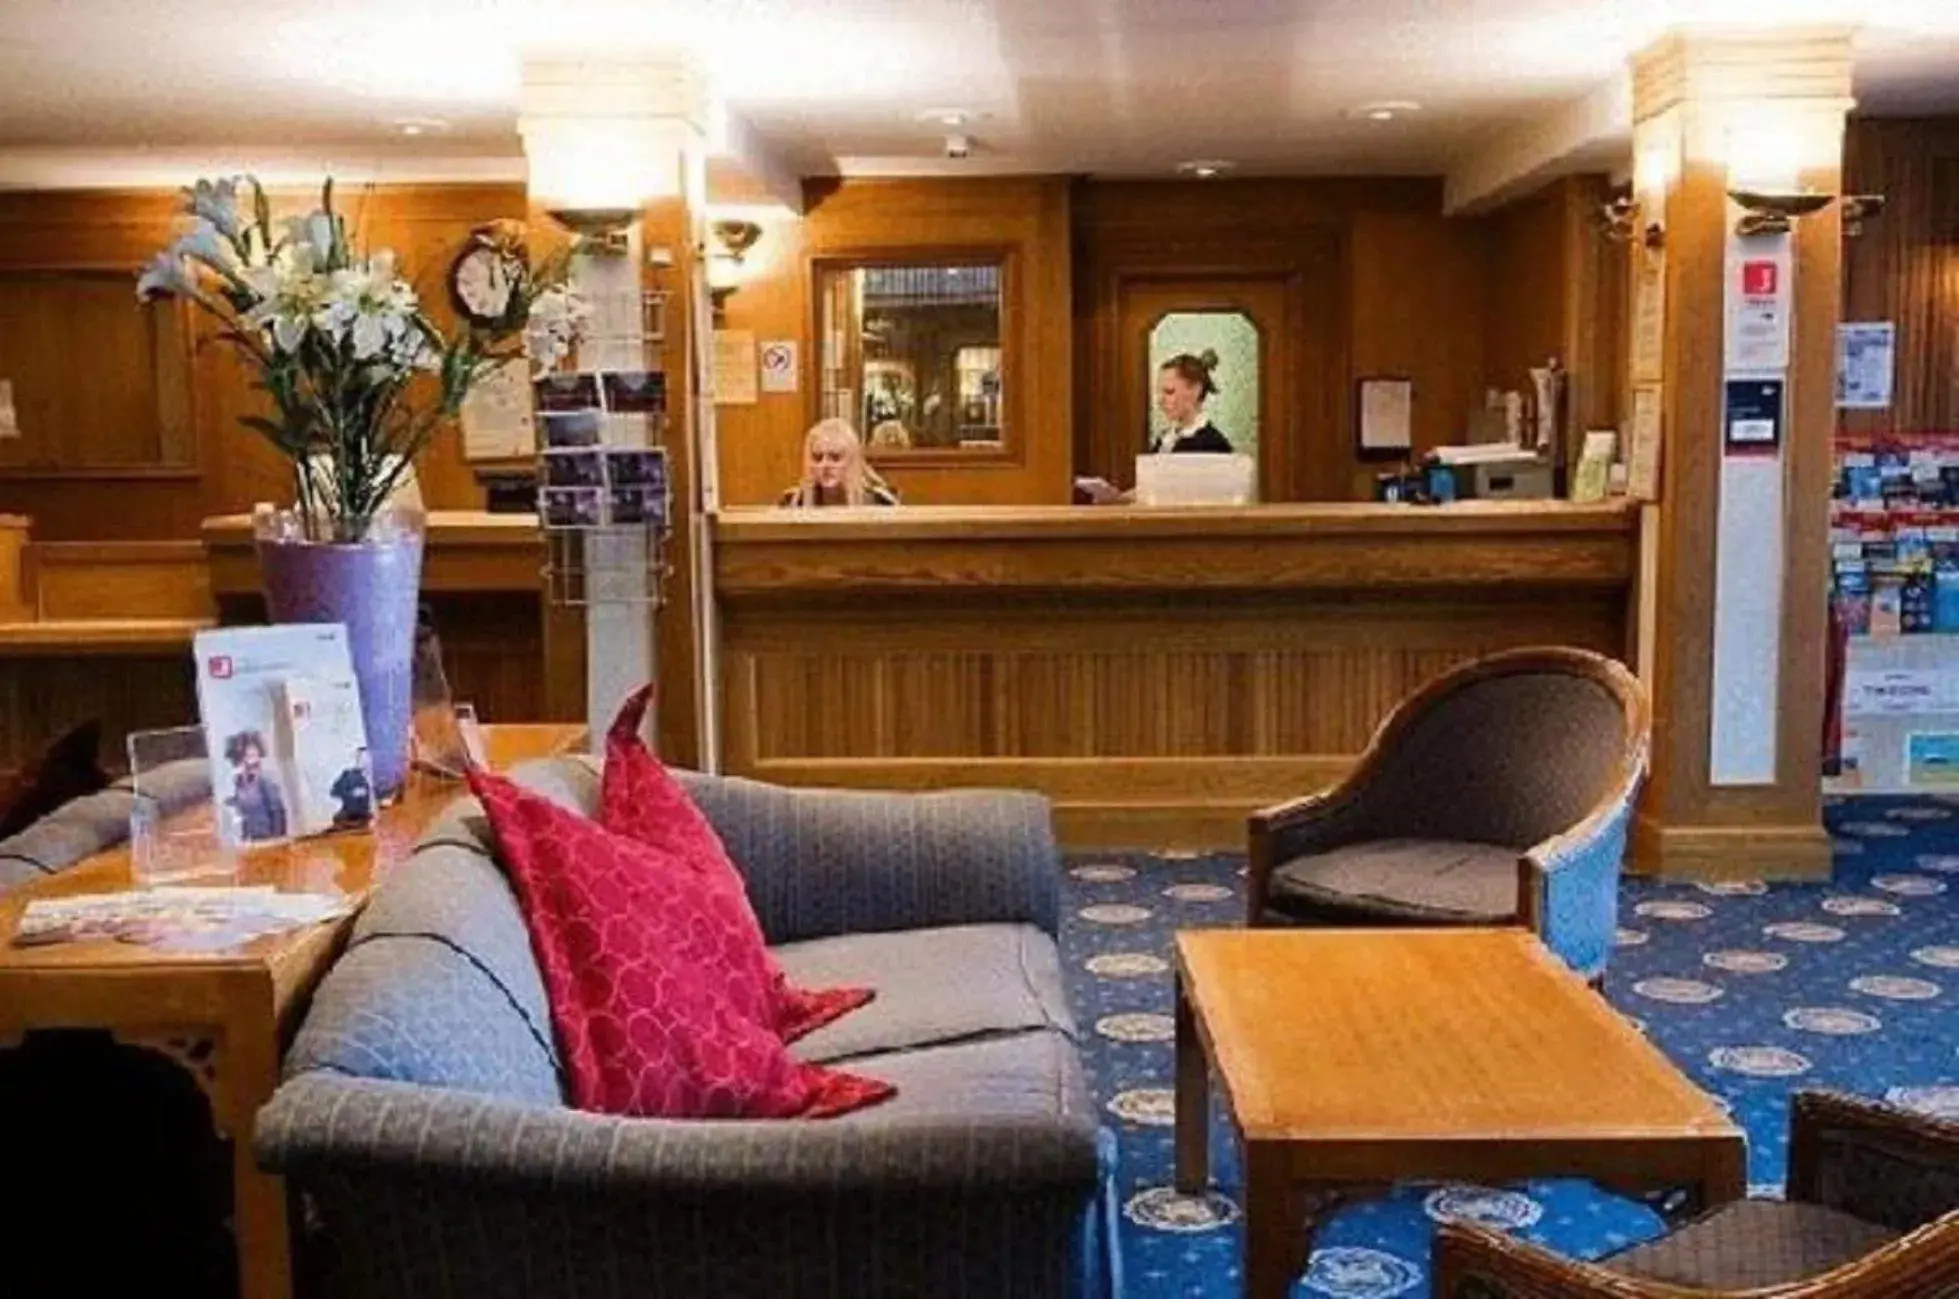 Lobby or reception in Carrington House Hotel